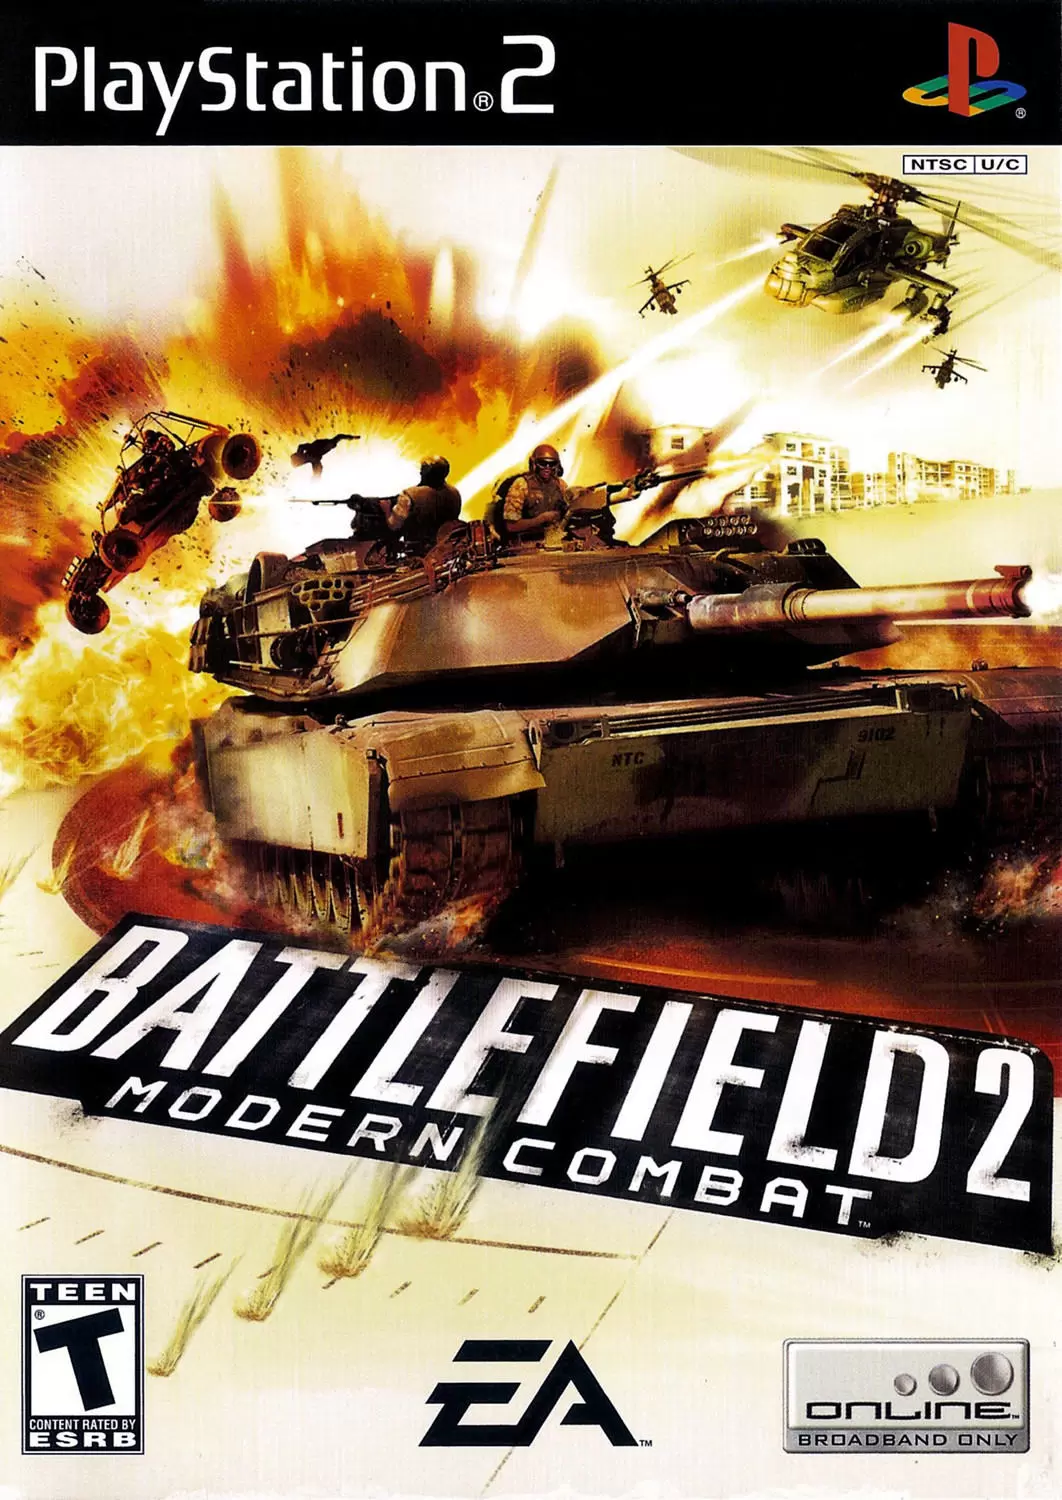 PS2 Games - Battlefield 2: Modern Combat